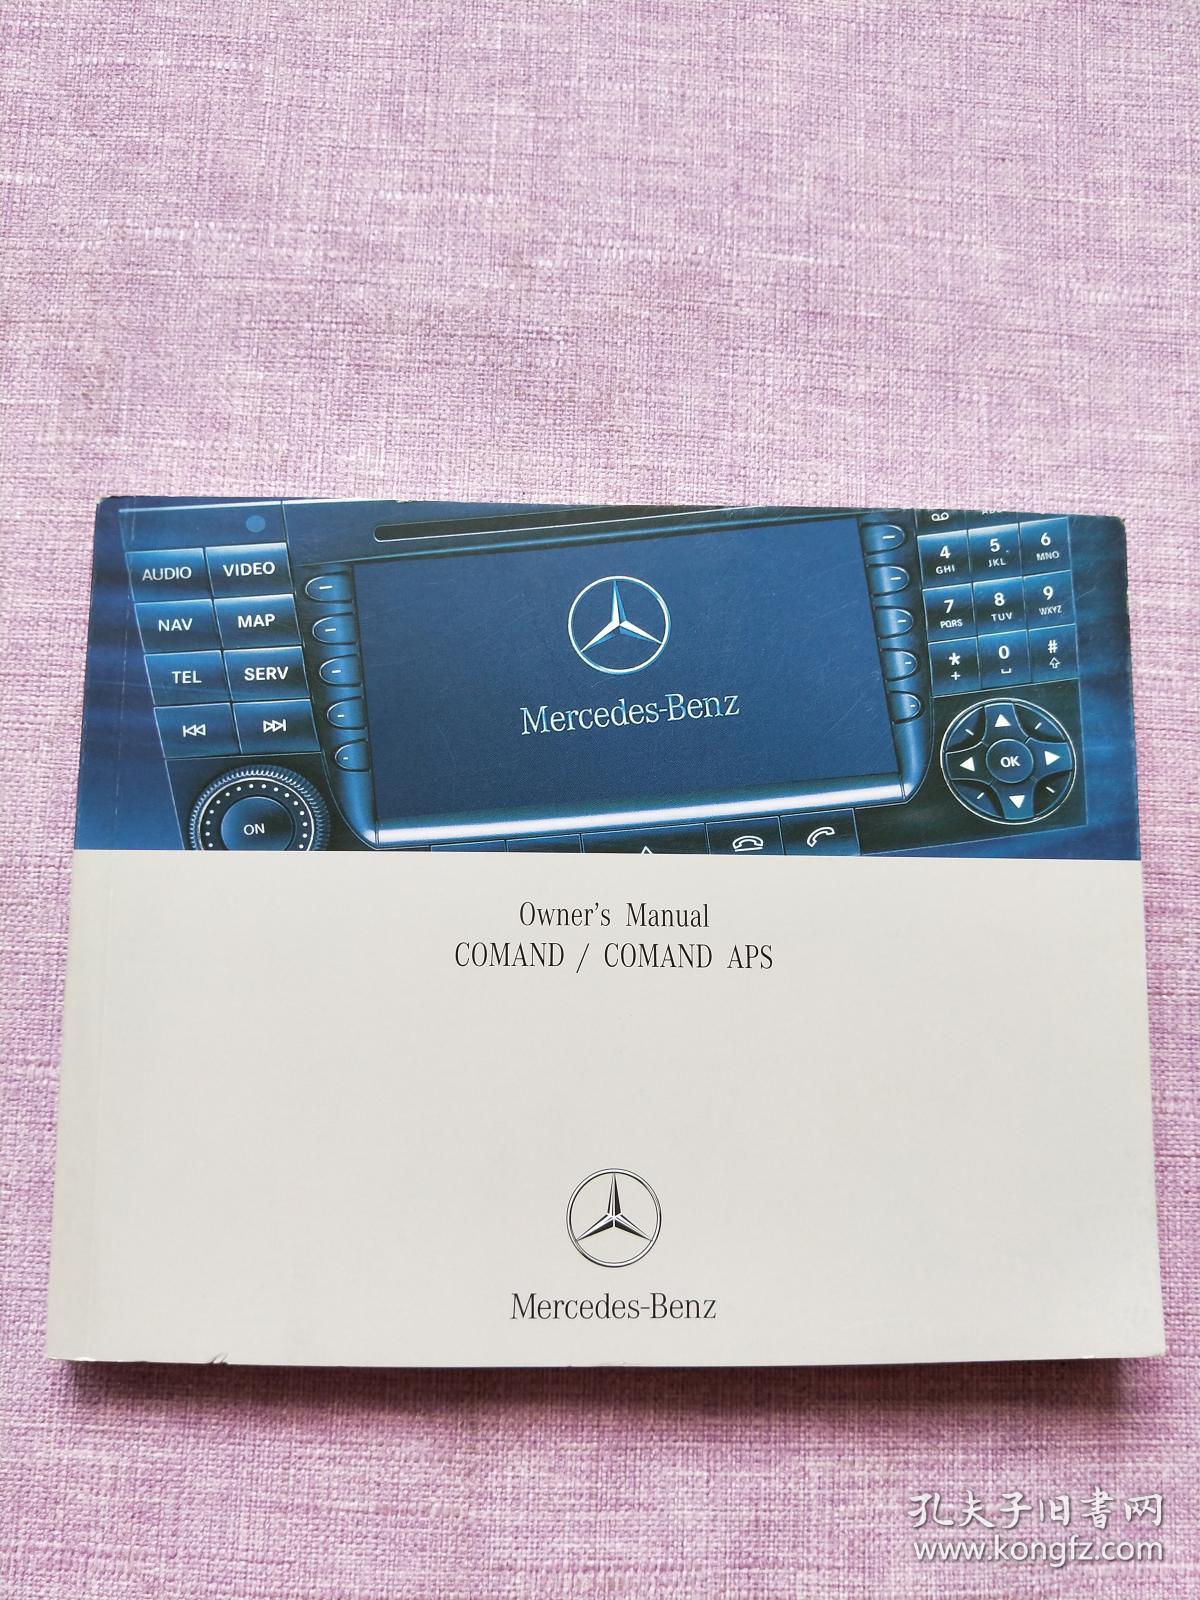 COMAND / COMAND APS Mercedes - Benz--Owner's Manual